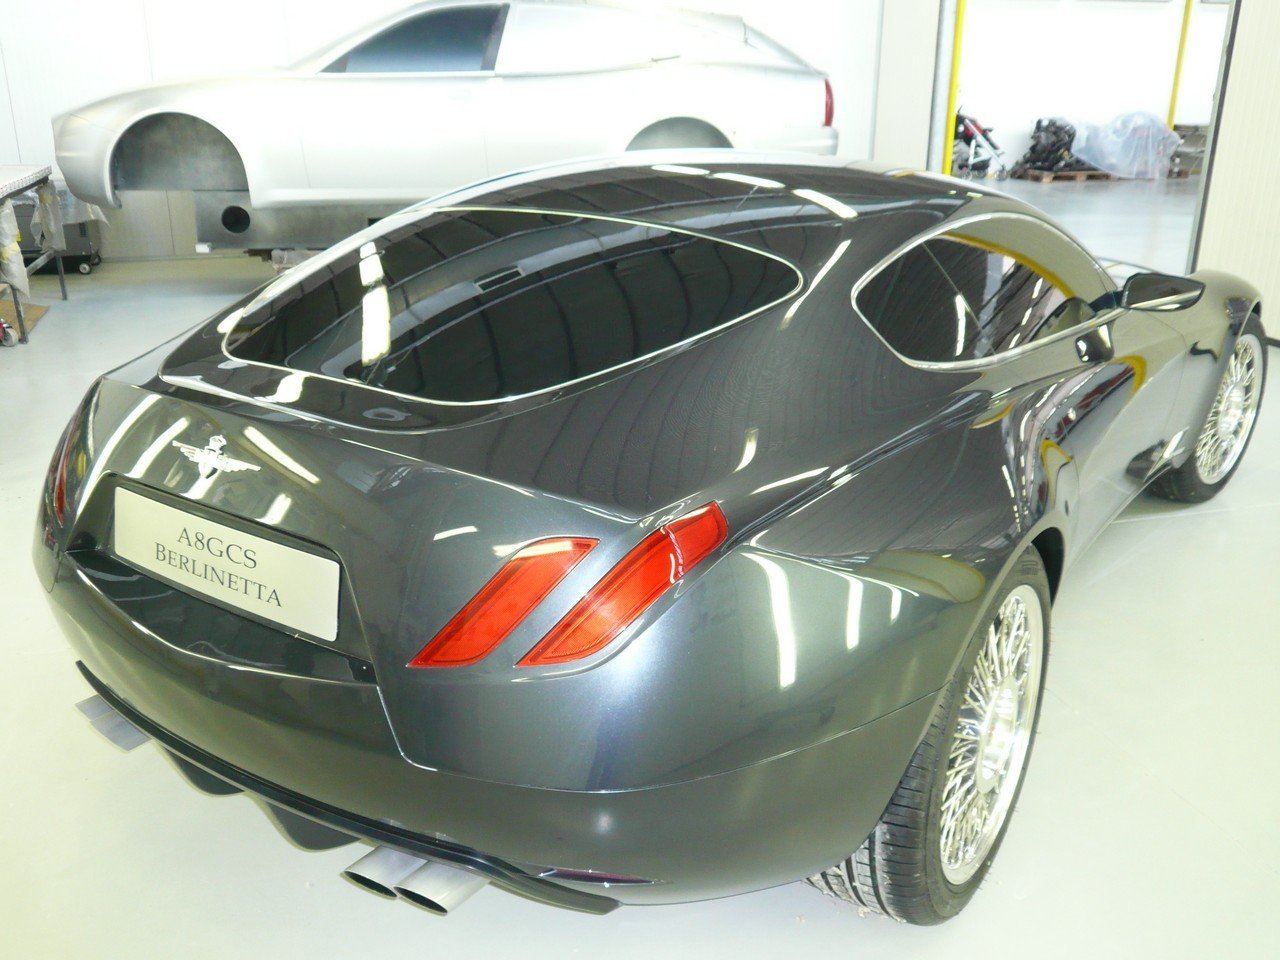 Maserati+car+pictures